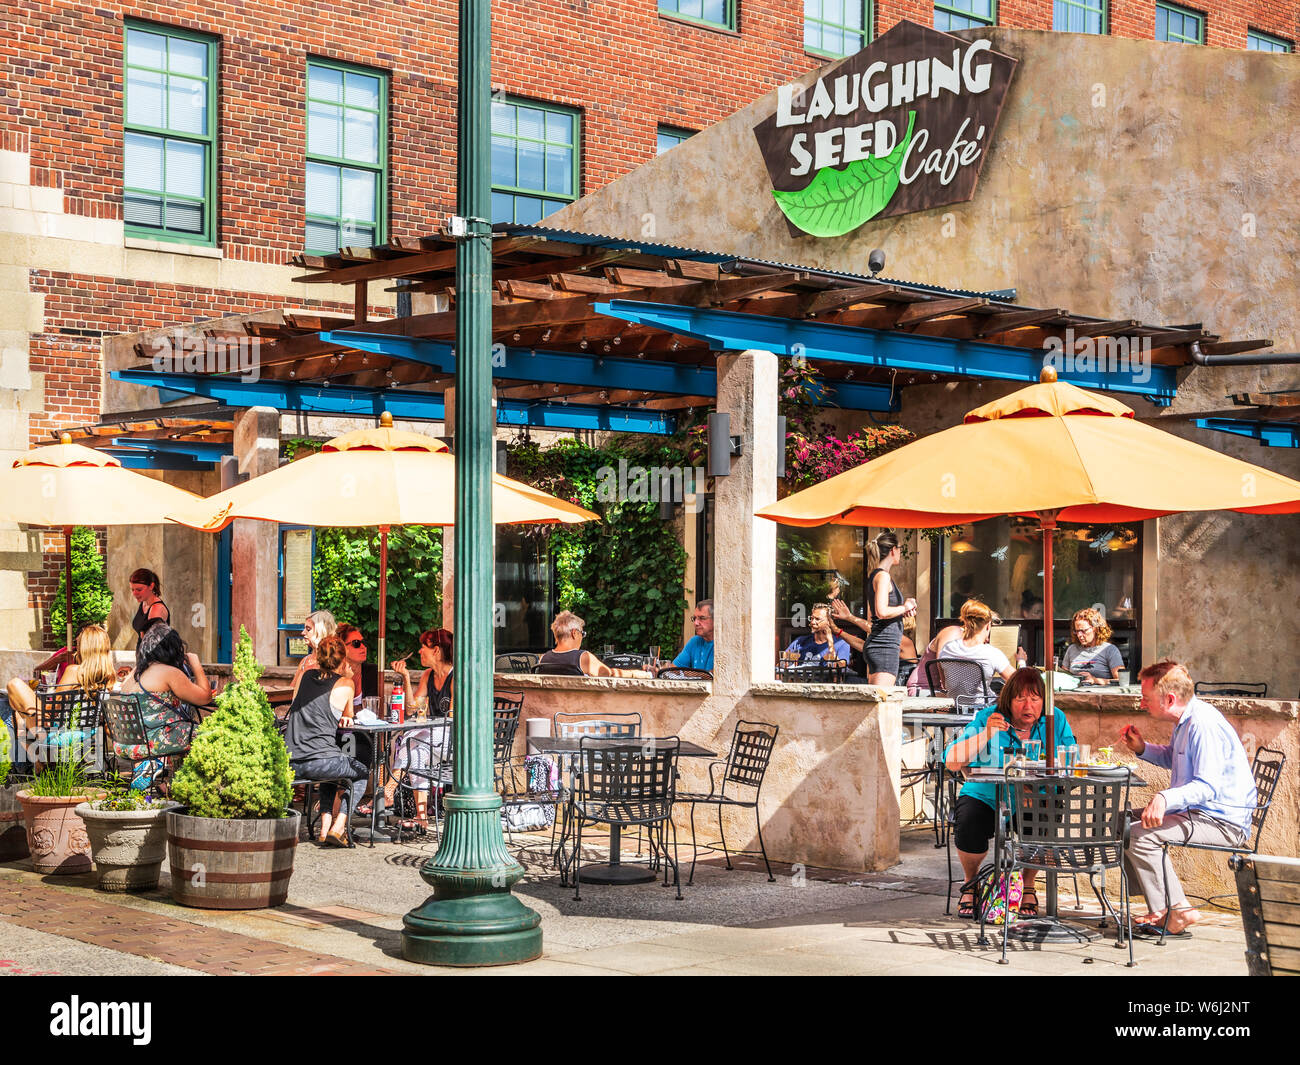 ASHEVILLE, NC, USA-27 19 Juli: Der Lachende Saat Cafe, an der Wall Street in der Innenstadt von Asheville, besetzt ist, mit den Kunden in der Umgebung. Stockfoto